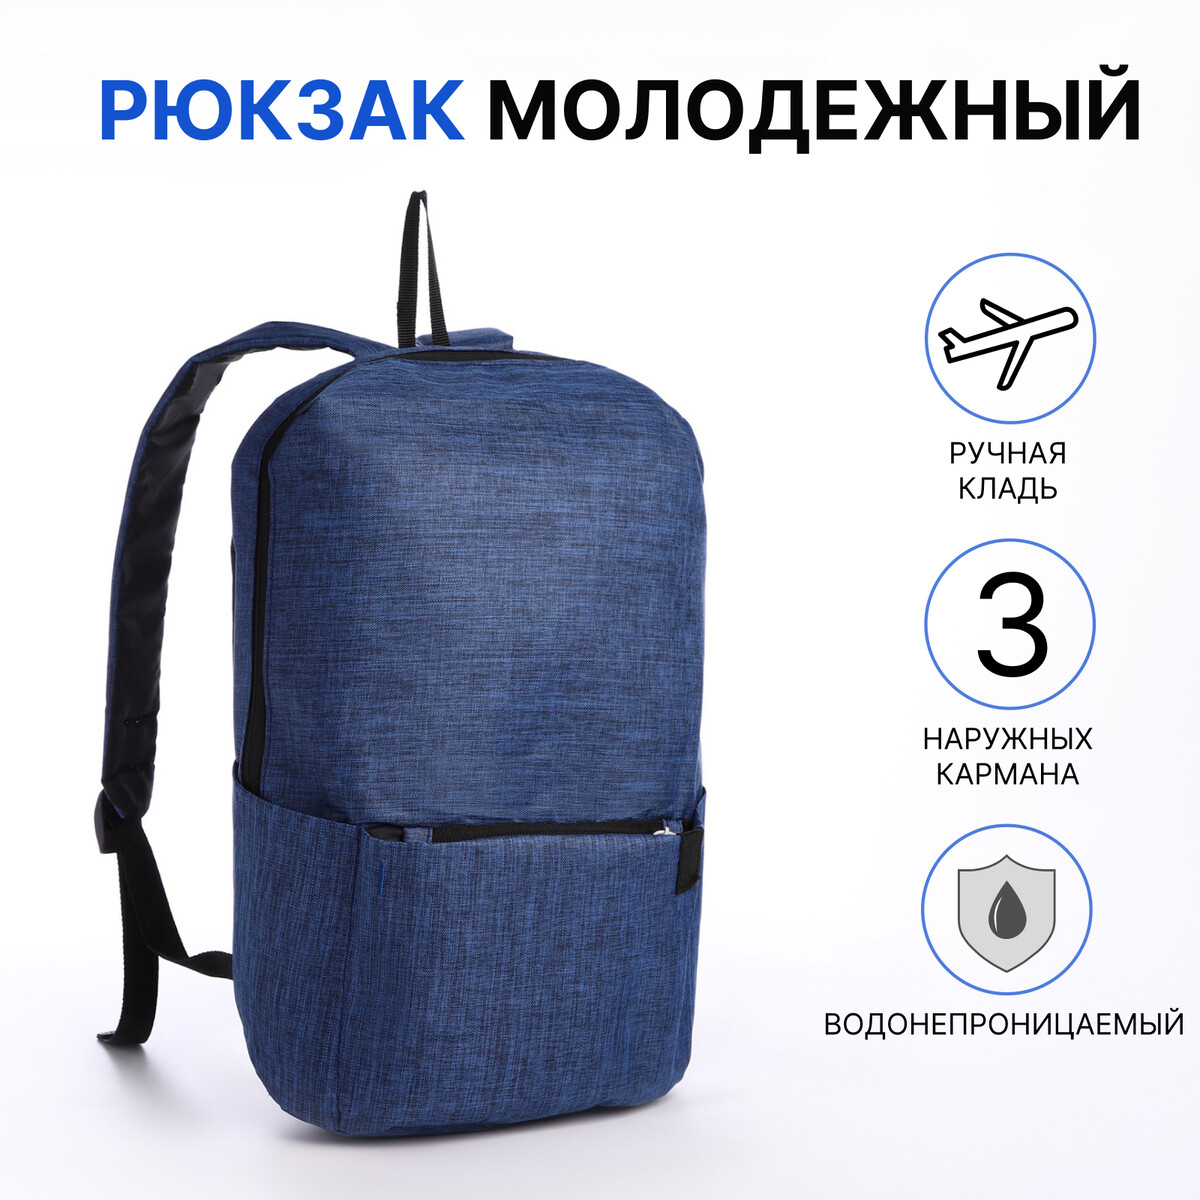 Рюкзак молодежный из текстиля на молнии, водонепроницаемый, наружный карман, цвет синий рюкзак молодежный из текстиля на молнии водонепроницаемый наружный карман серый